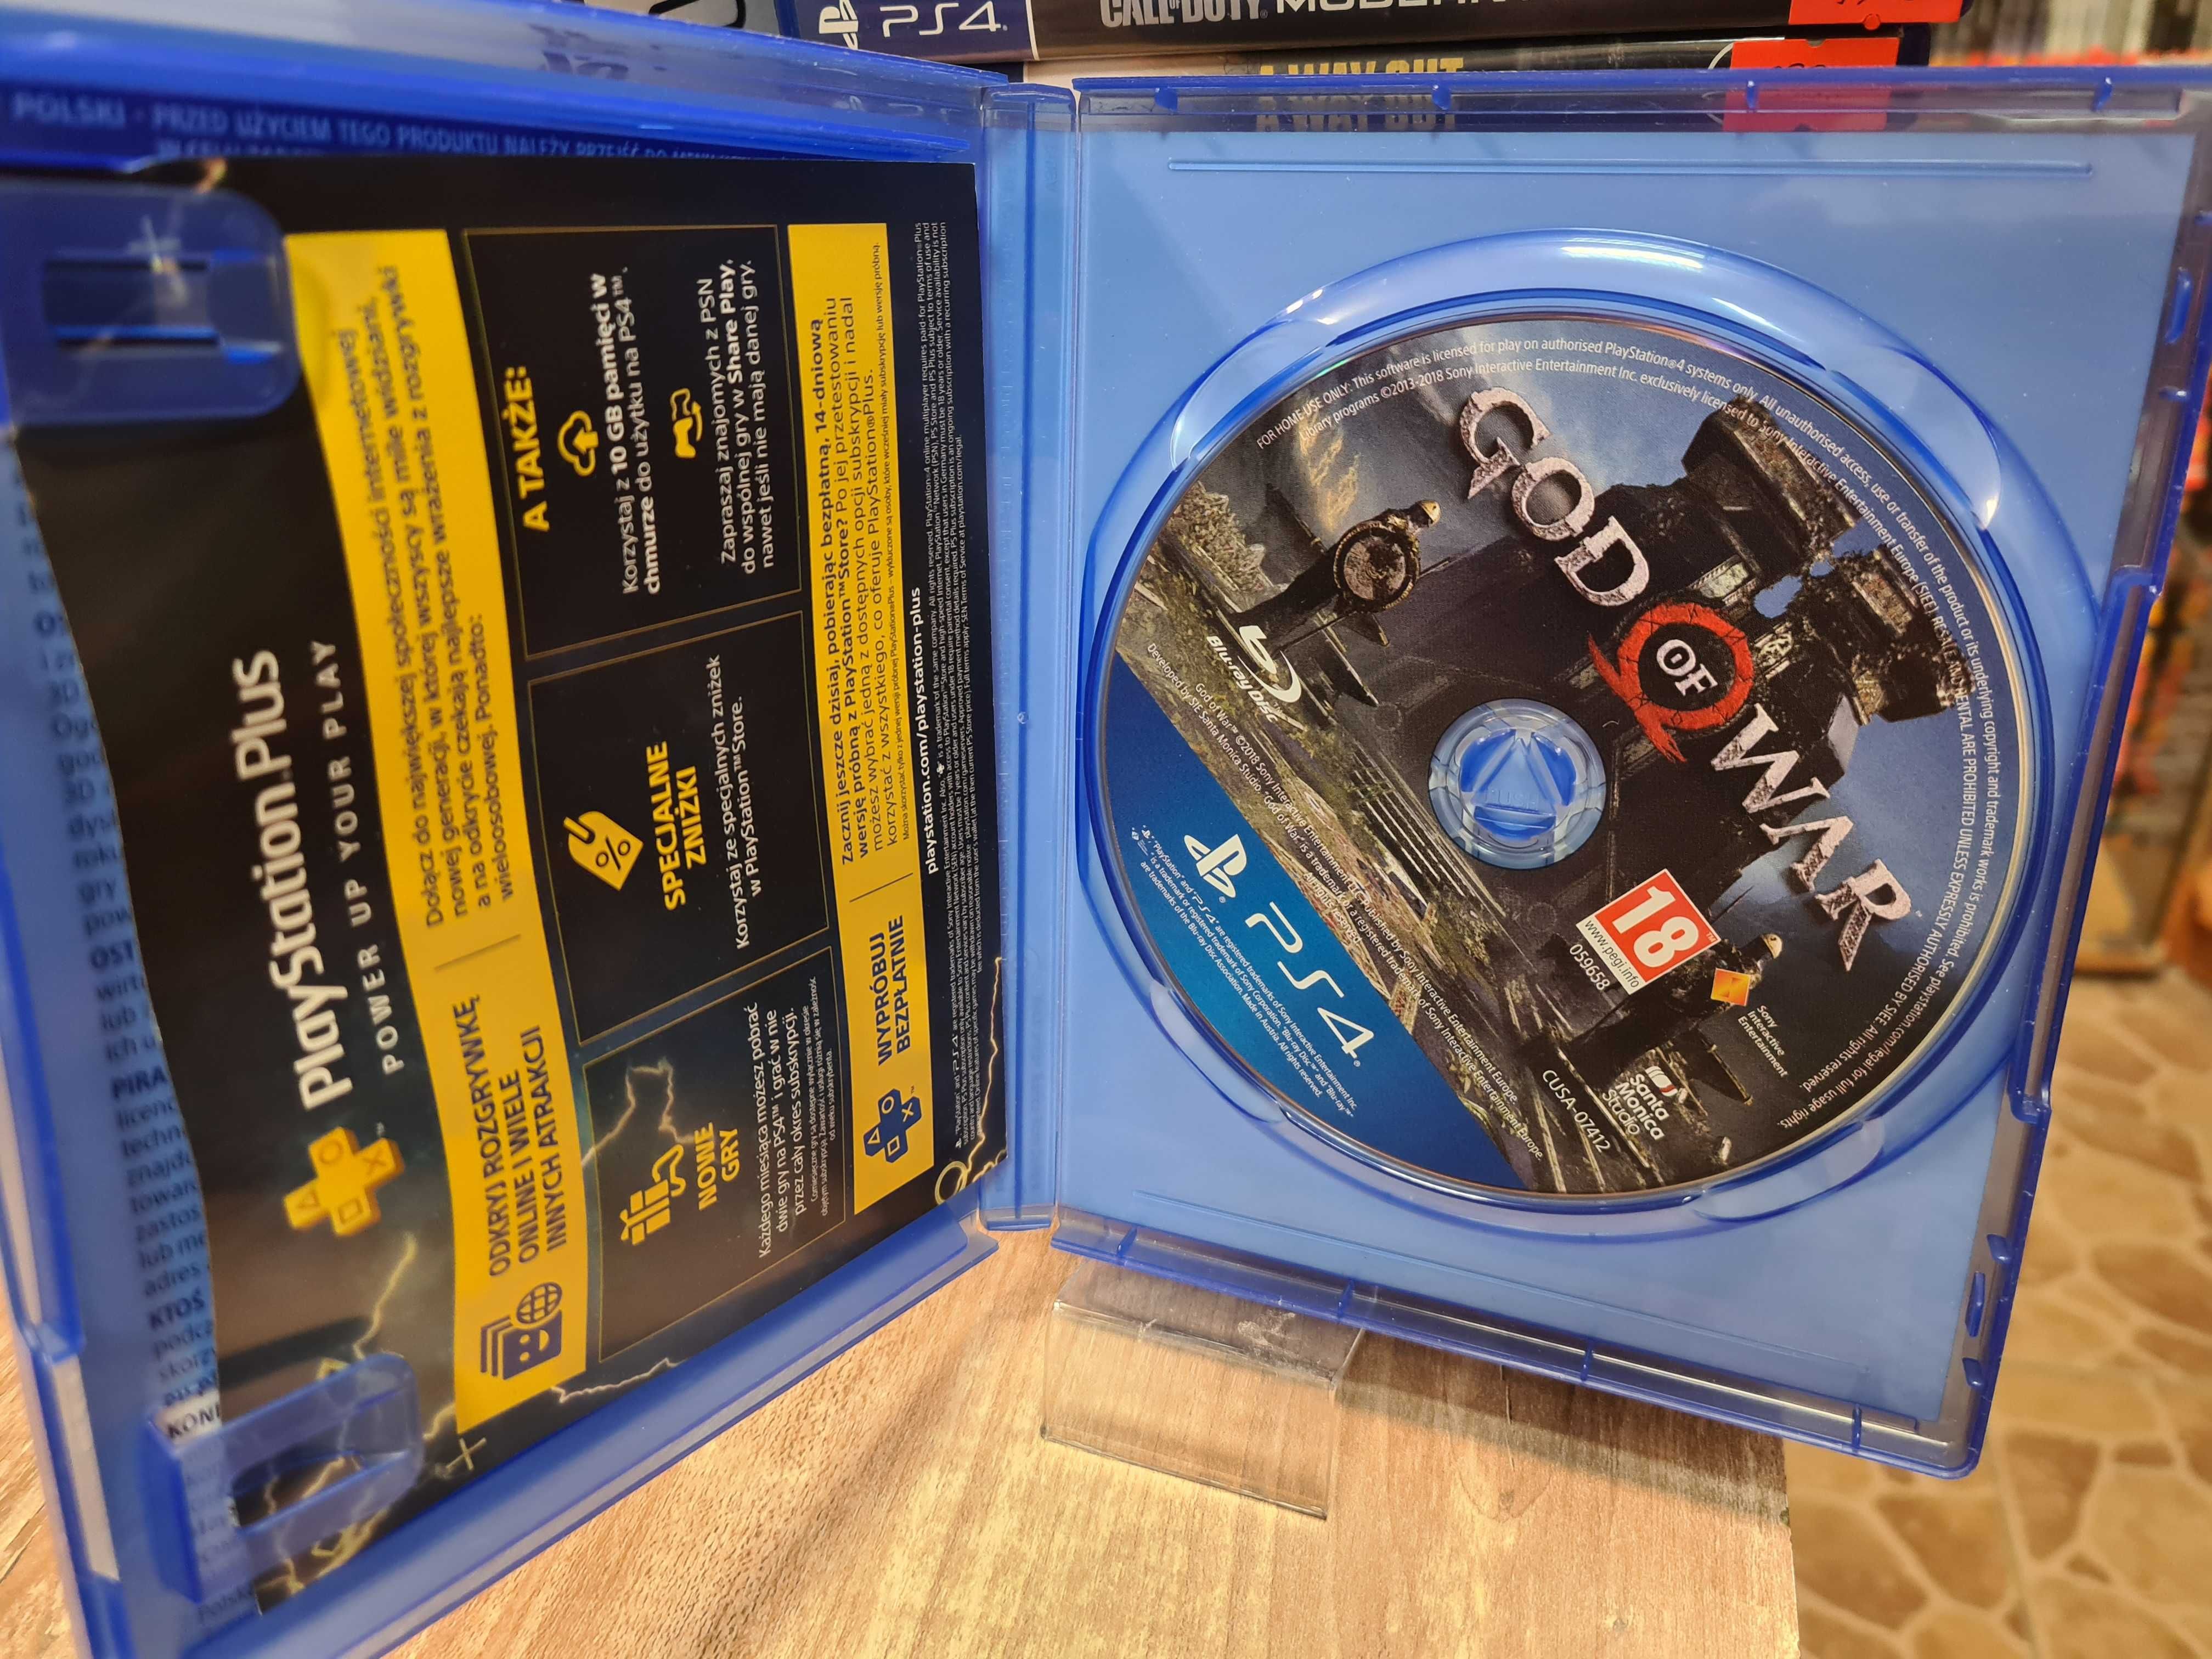 God of War PS4, Sklep Wysyłka Wymiana